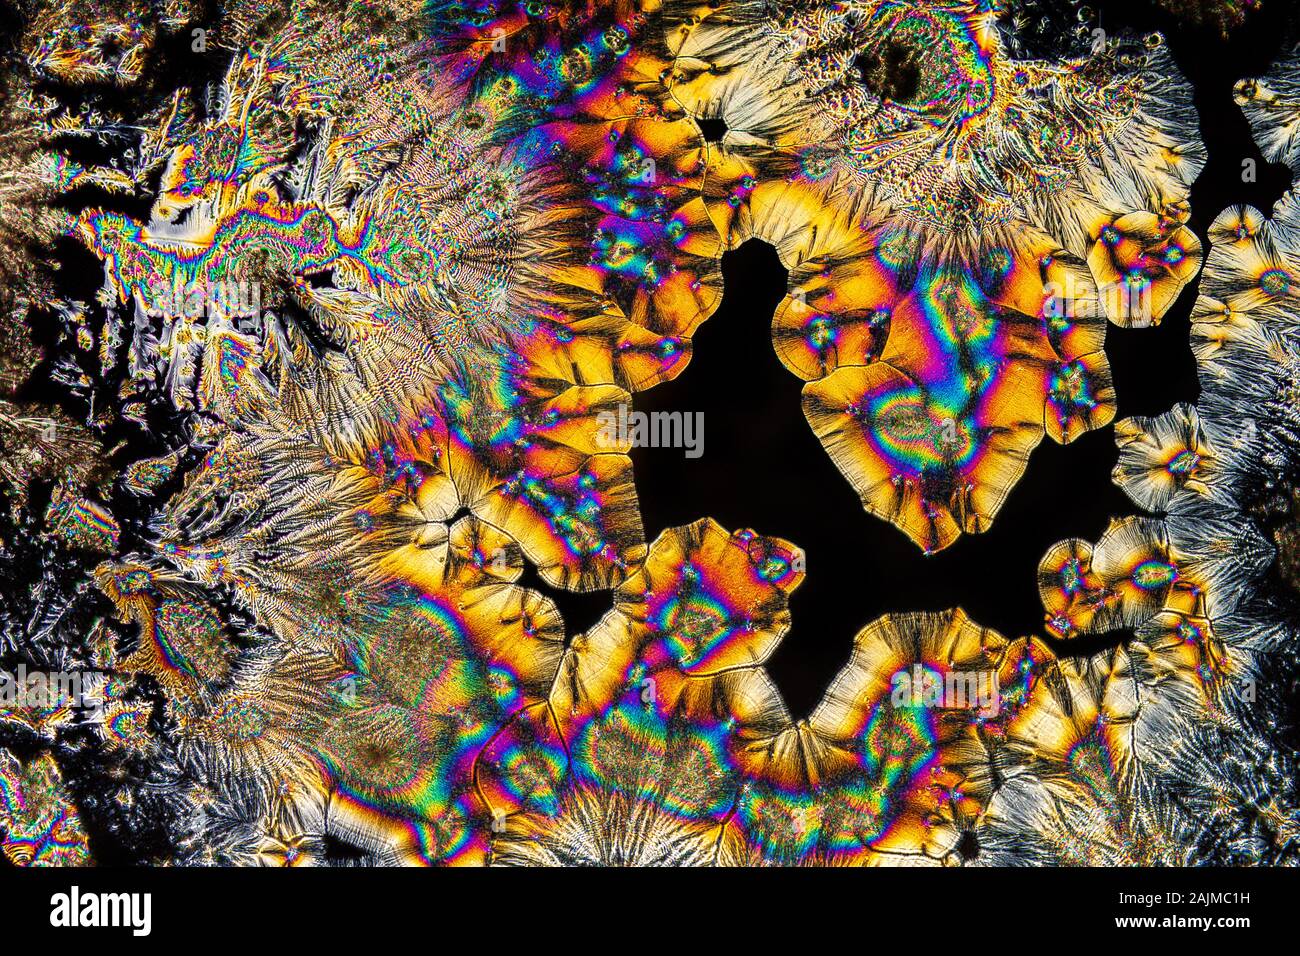 Photographie macro extrême de cristaux de vitamine C Banque D'Images